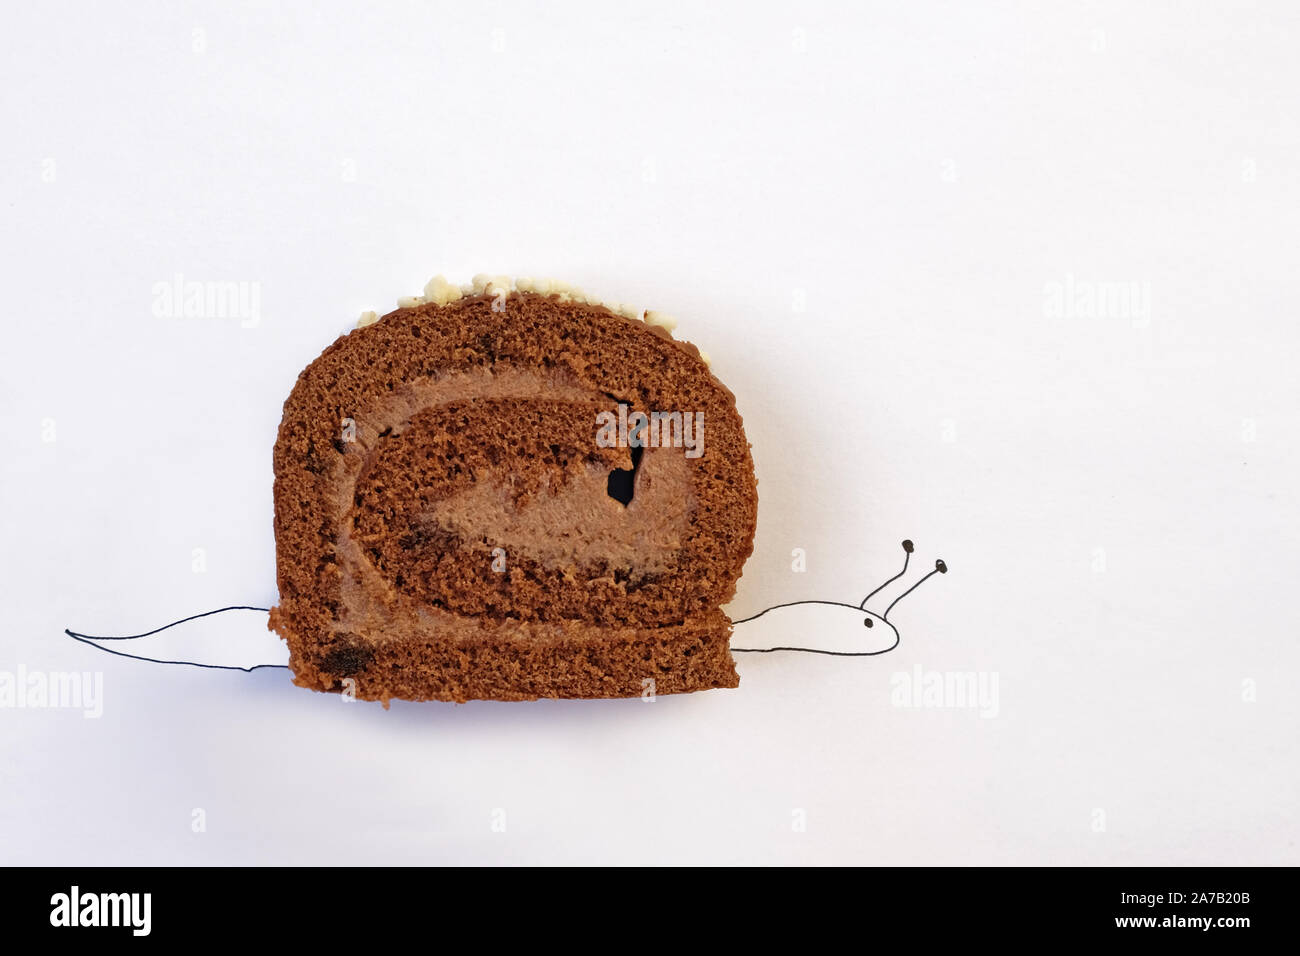 Ein Stuck Schokolade Gerollten Kuchen Auf Einem Weissen Hintergrund Stilisierte Pen Schnecke Gemalt Das Konzept Der Gewichtszunahme Mit Hilfe Von Desserts Und Die Schwierigen Stockfotografie Alamy